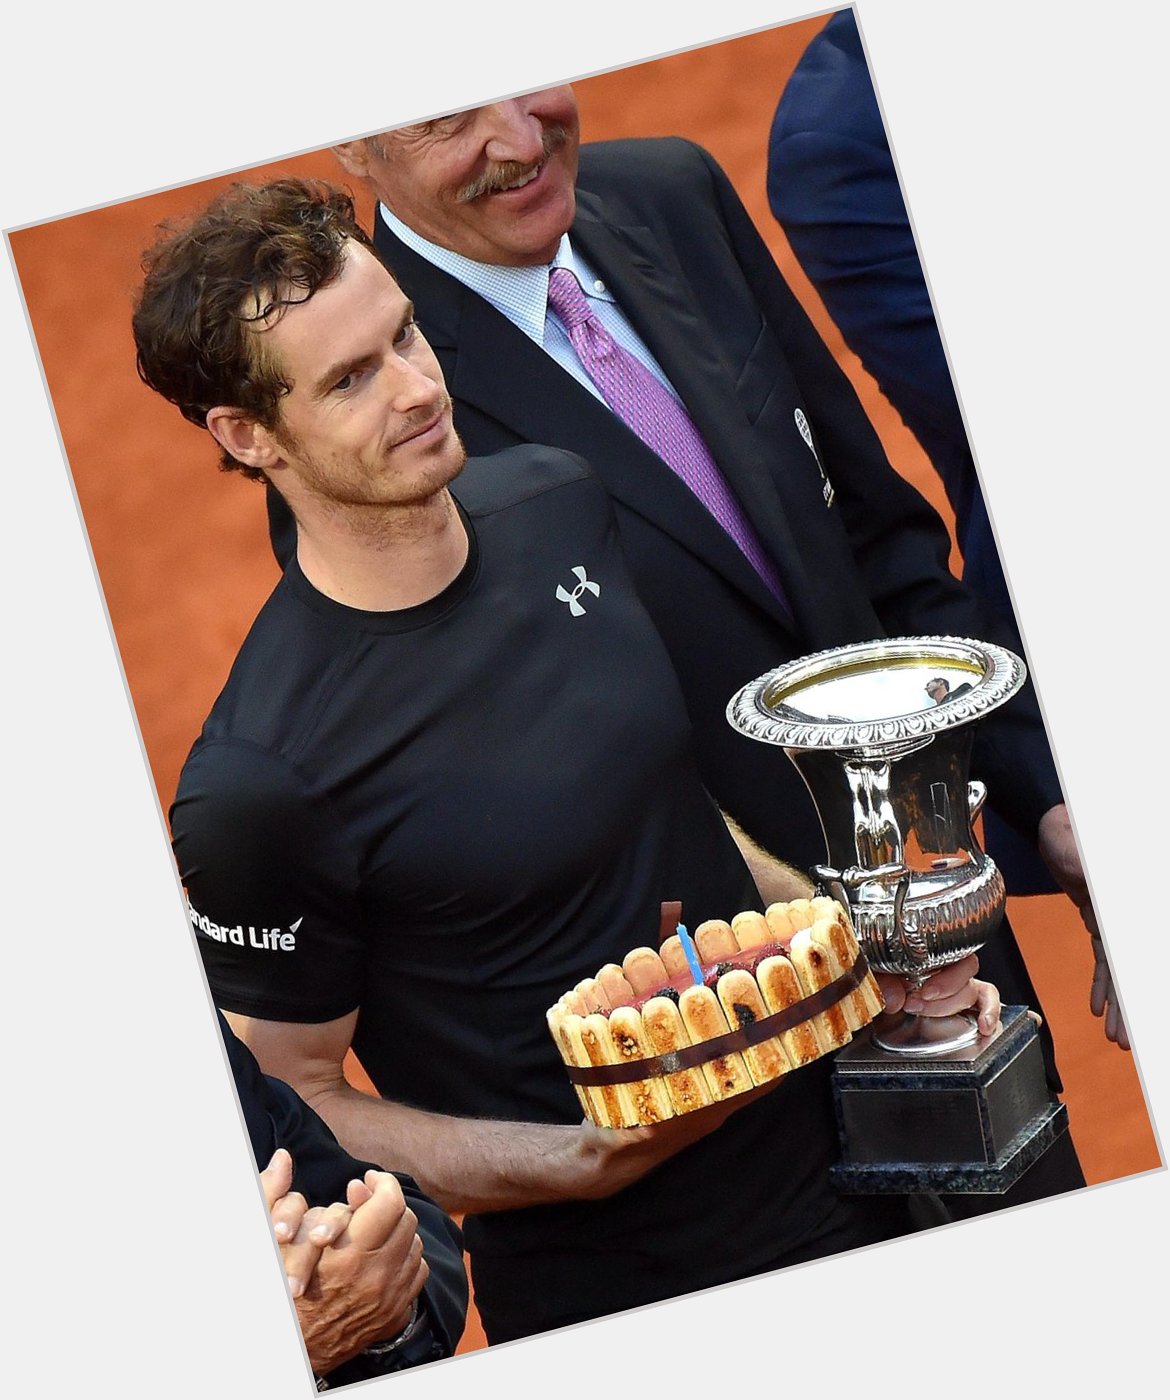 Il a gagné les de Rome en 2016, Happy birthday Andy Murray ! 